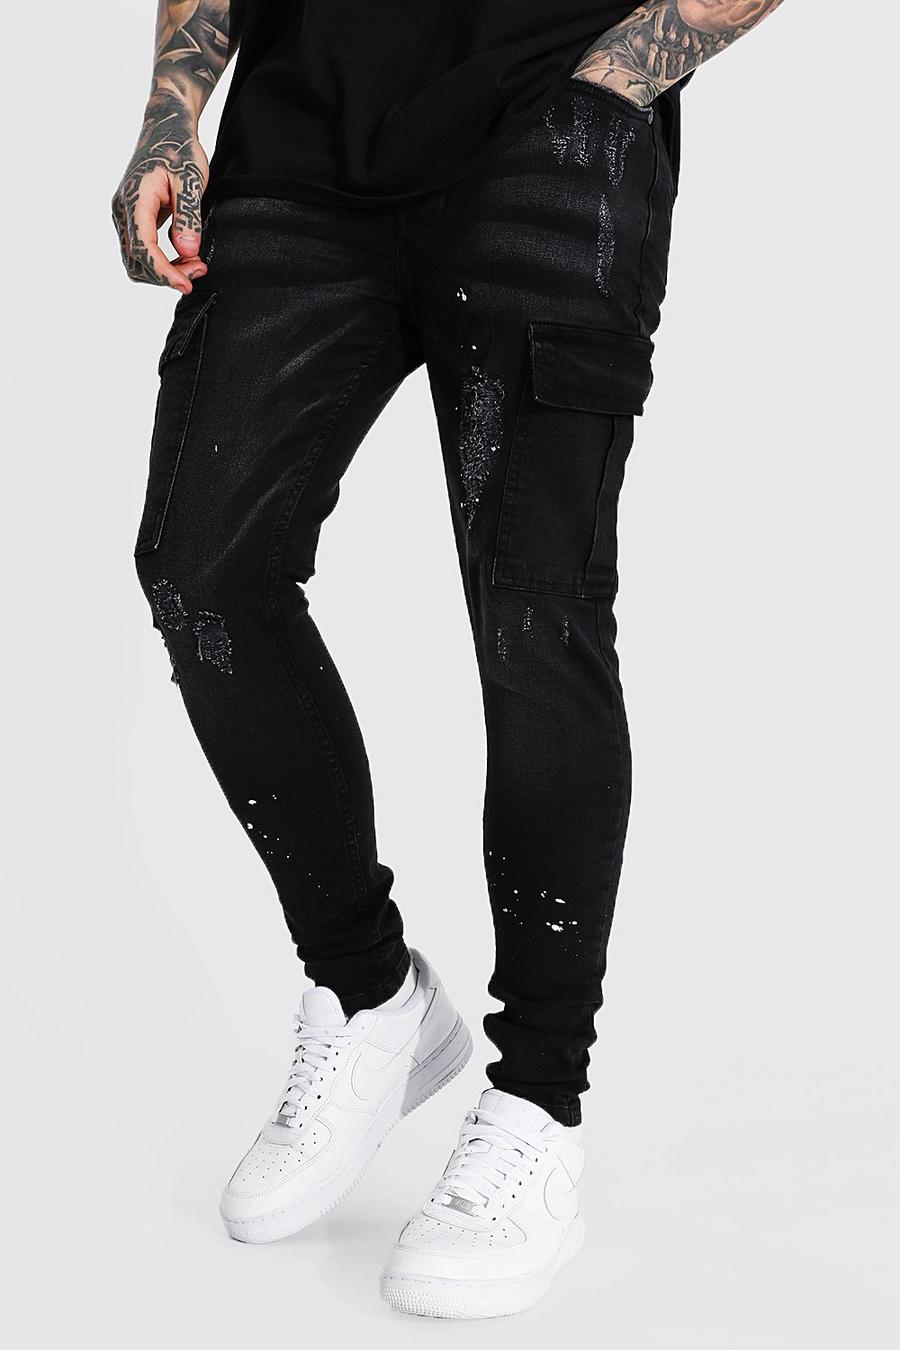 שחור דהוי ג'ינס דגמ"ח סופר סקיני עם כתמי התזת צבע image number 1